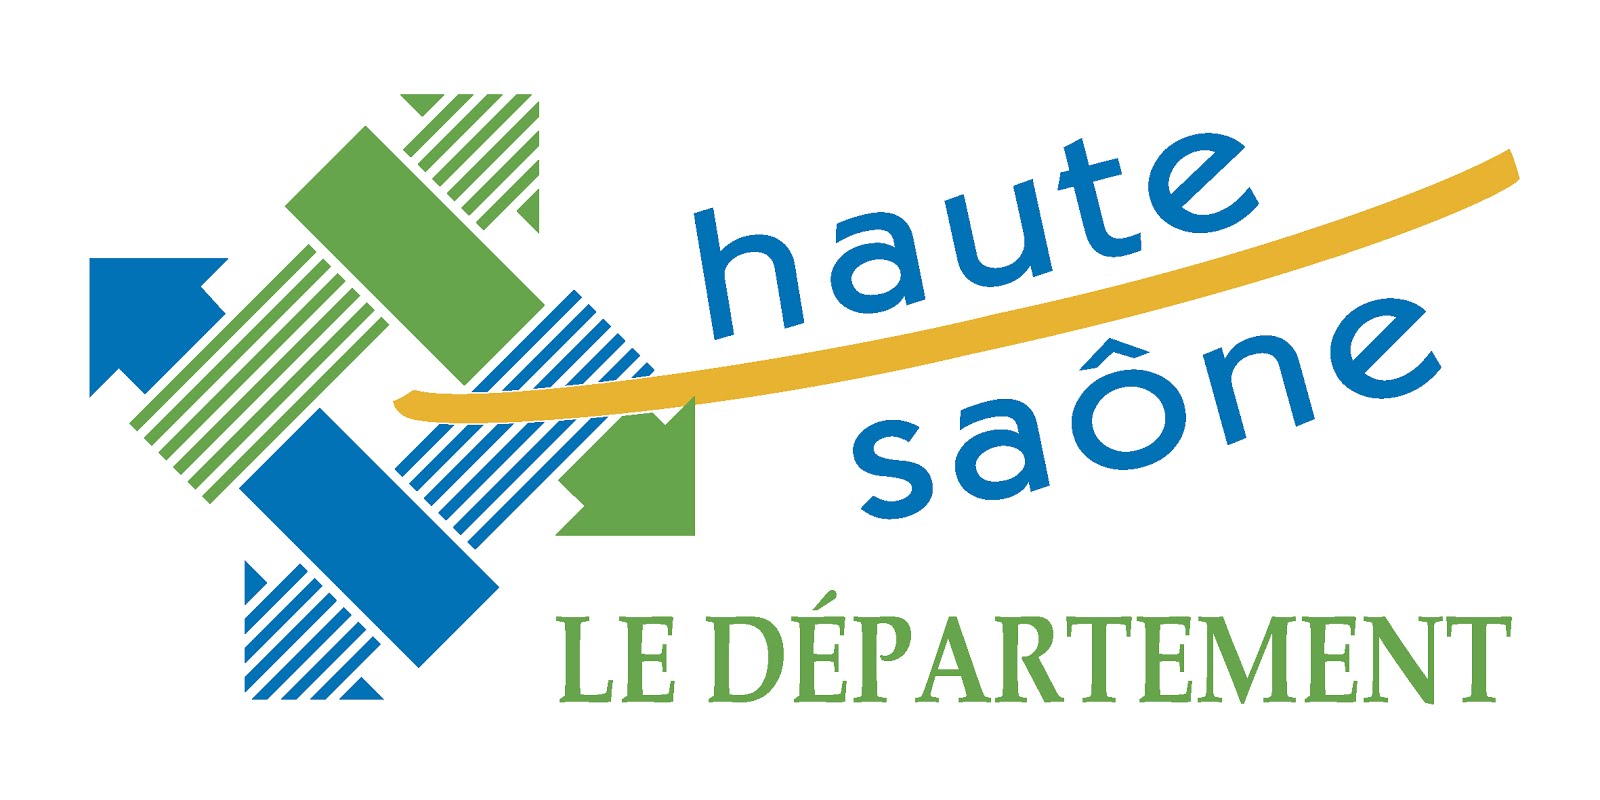 En partenariat avec le Département de la Haute-Saône